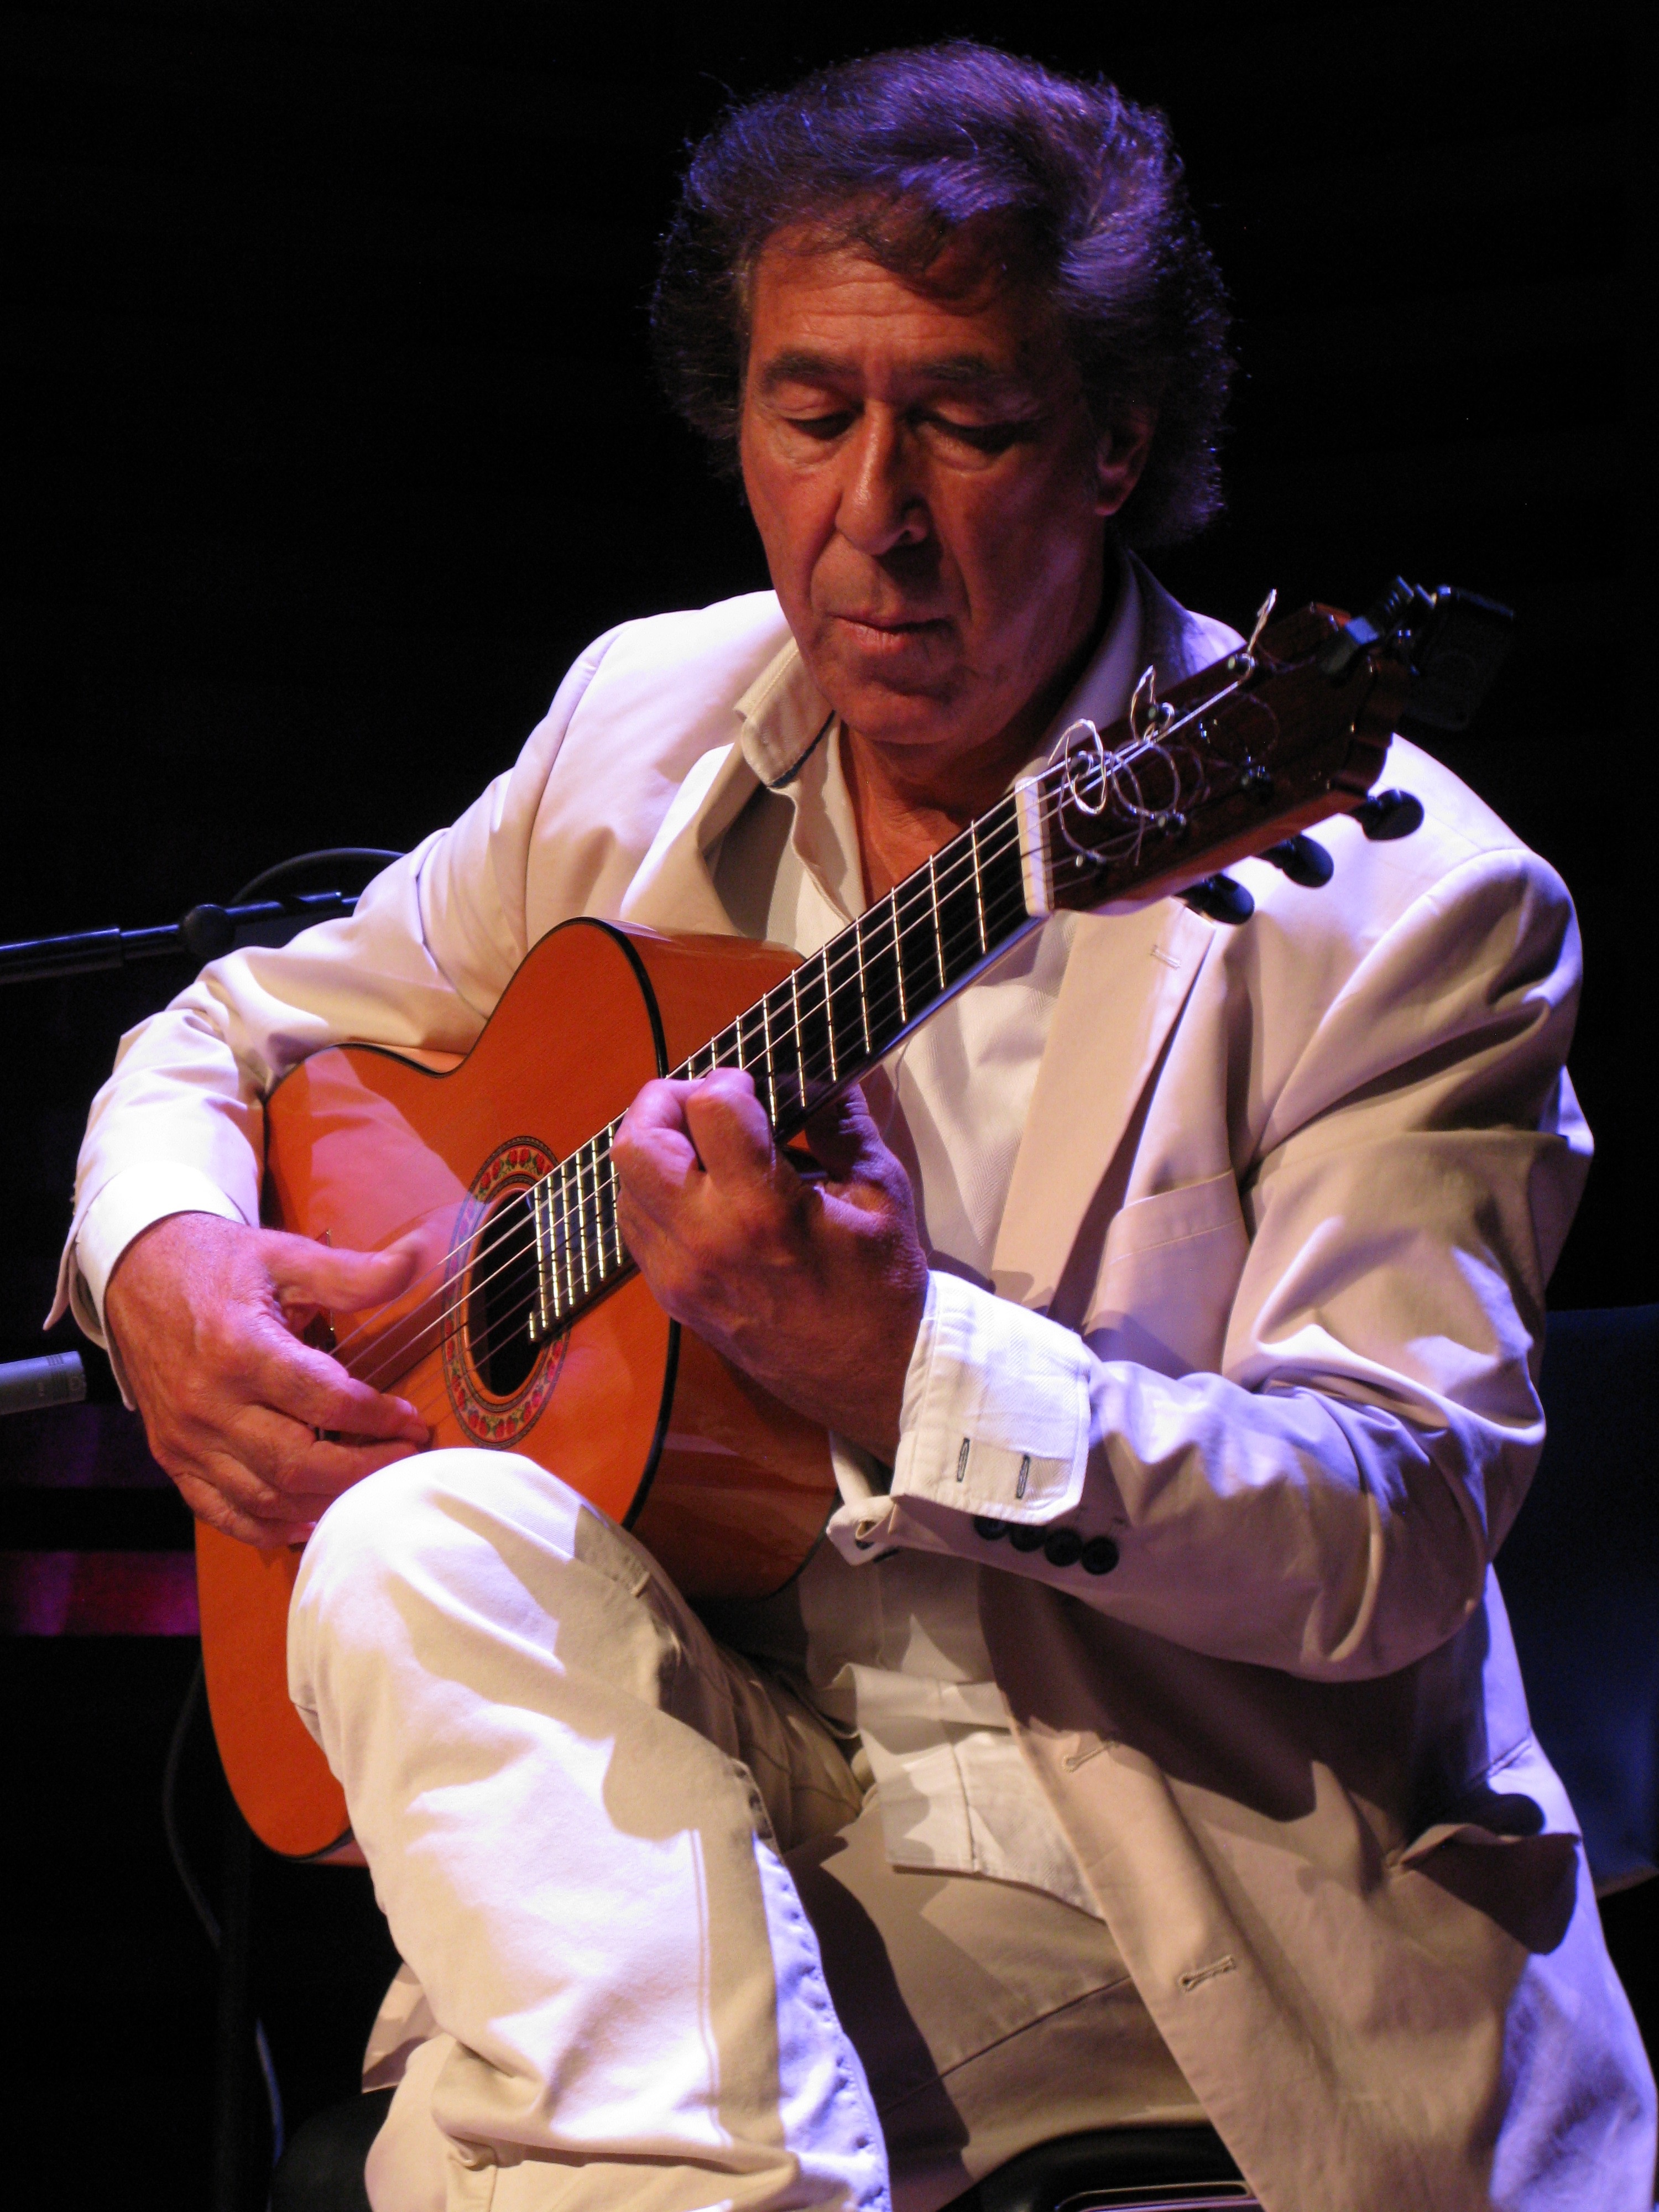 Juan Martin brings Flamenco to Runcorn